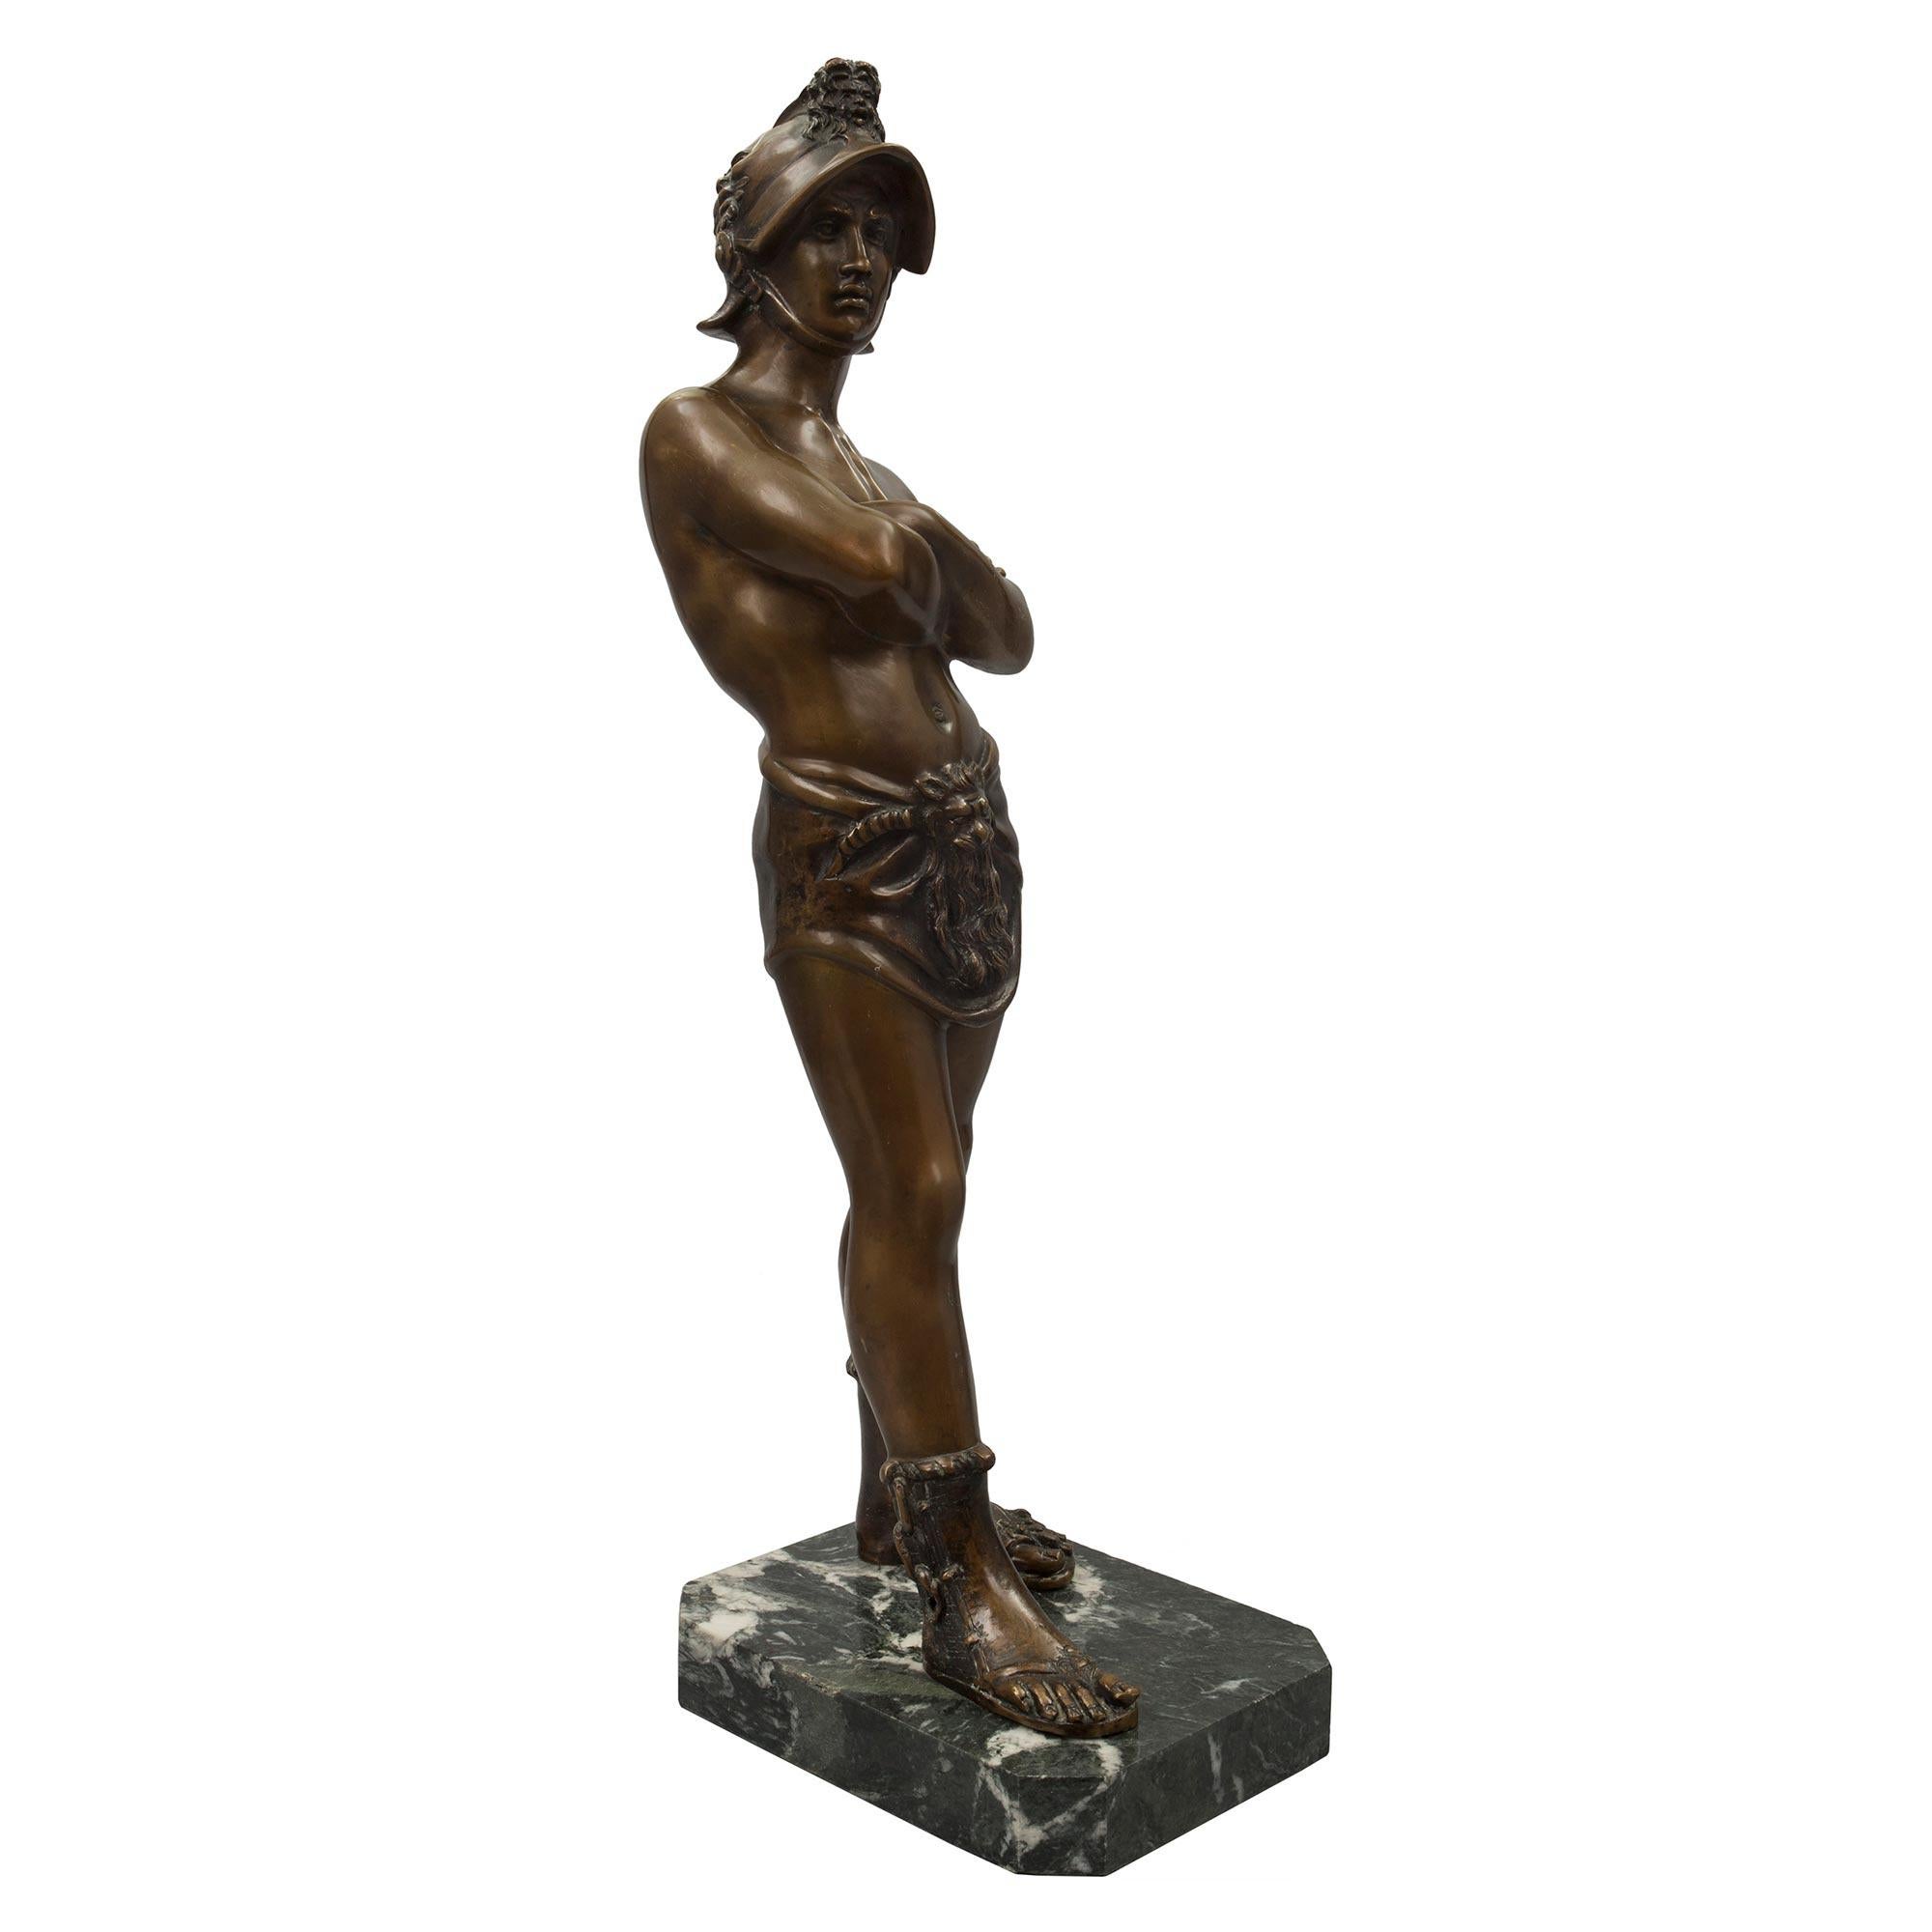 Belle statue italienne en bronze patiné du XIXe siècle représentant un jeune gladiateur. La statue est surélevée par un socle rectangulaire en marbre Verde Antico. Le gladiateur se tient fièrement debout, les bras croisés, et porte des sandales à